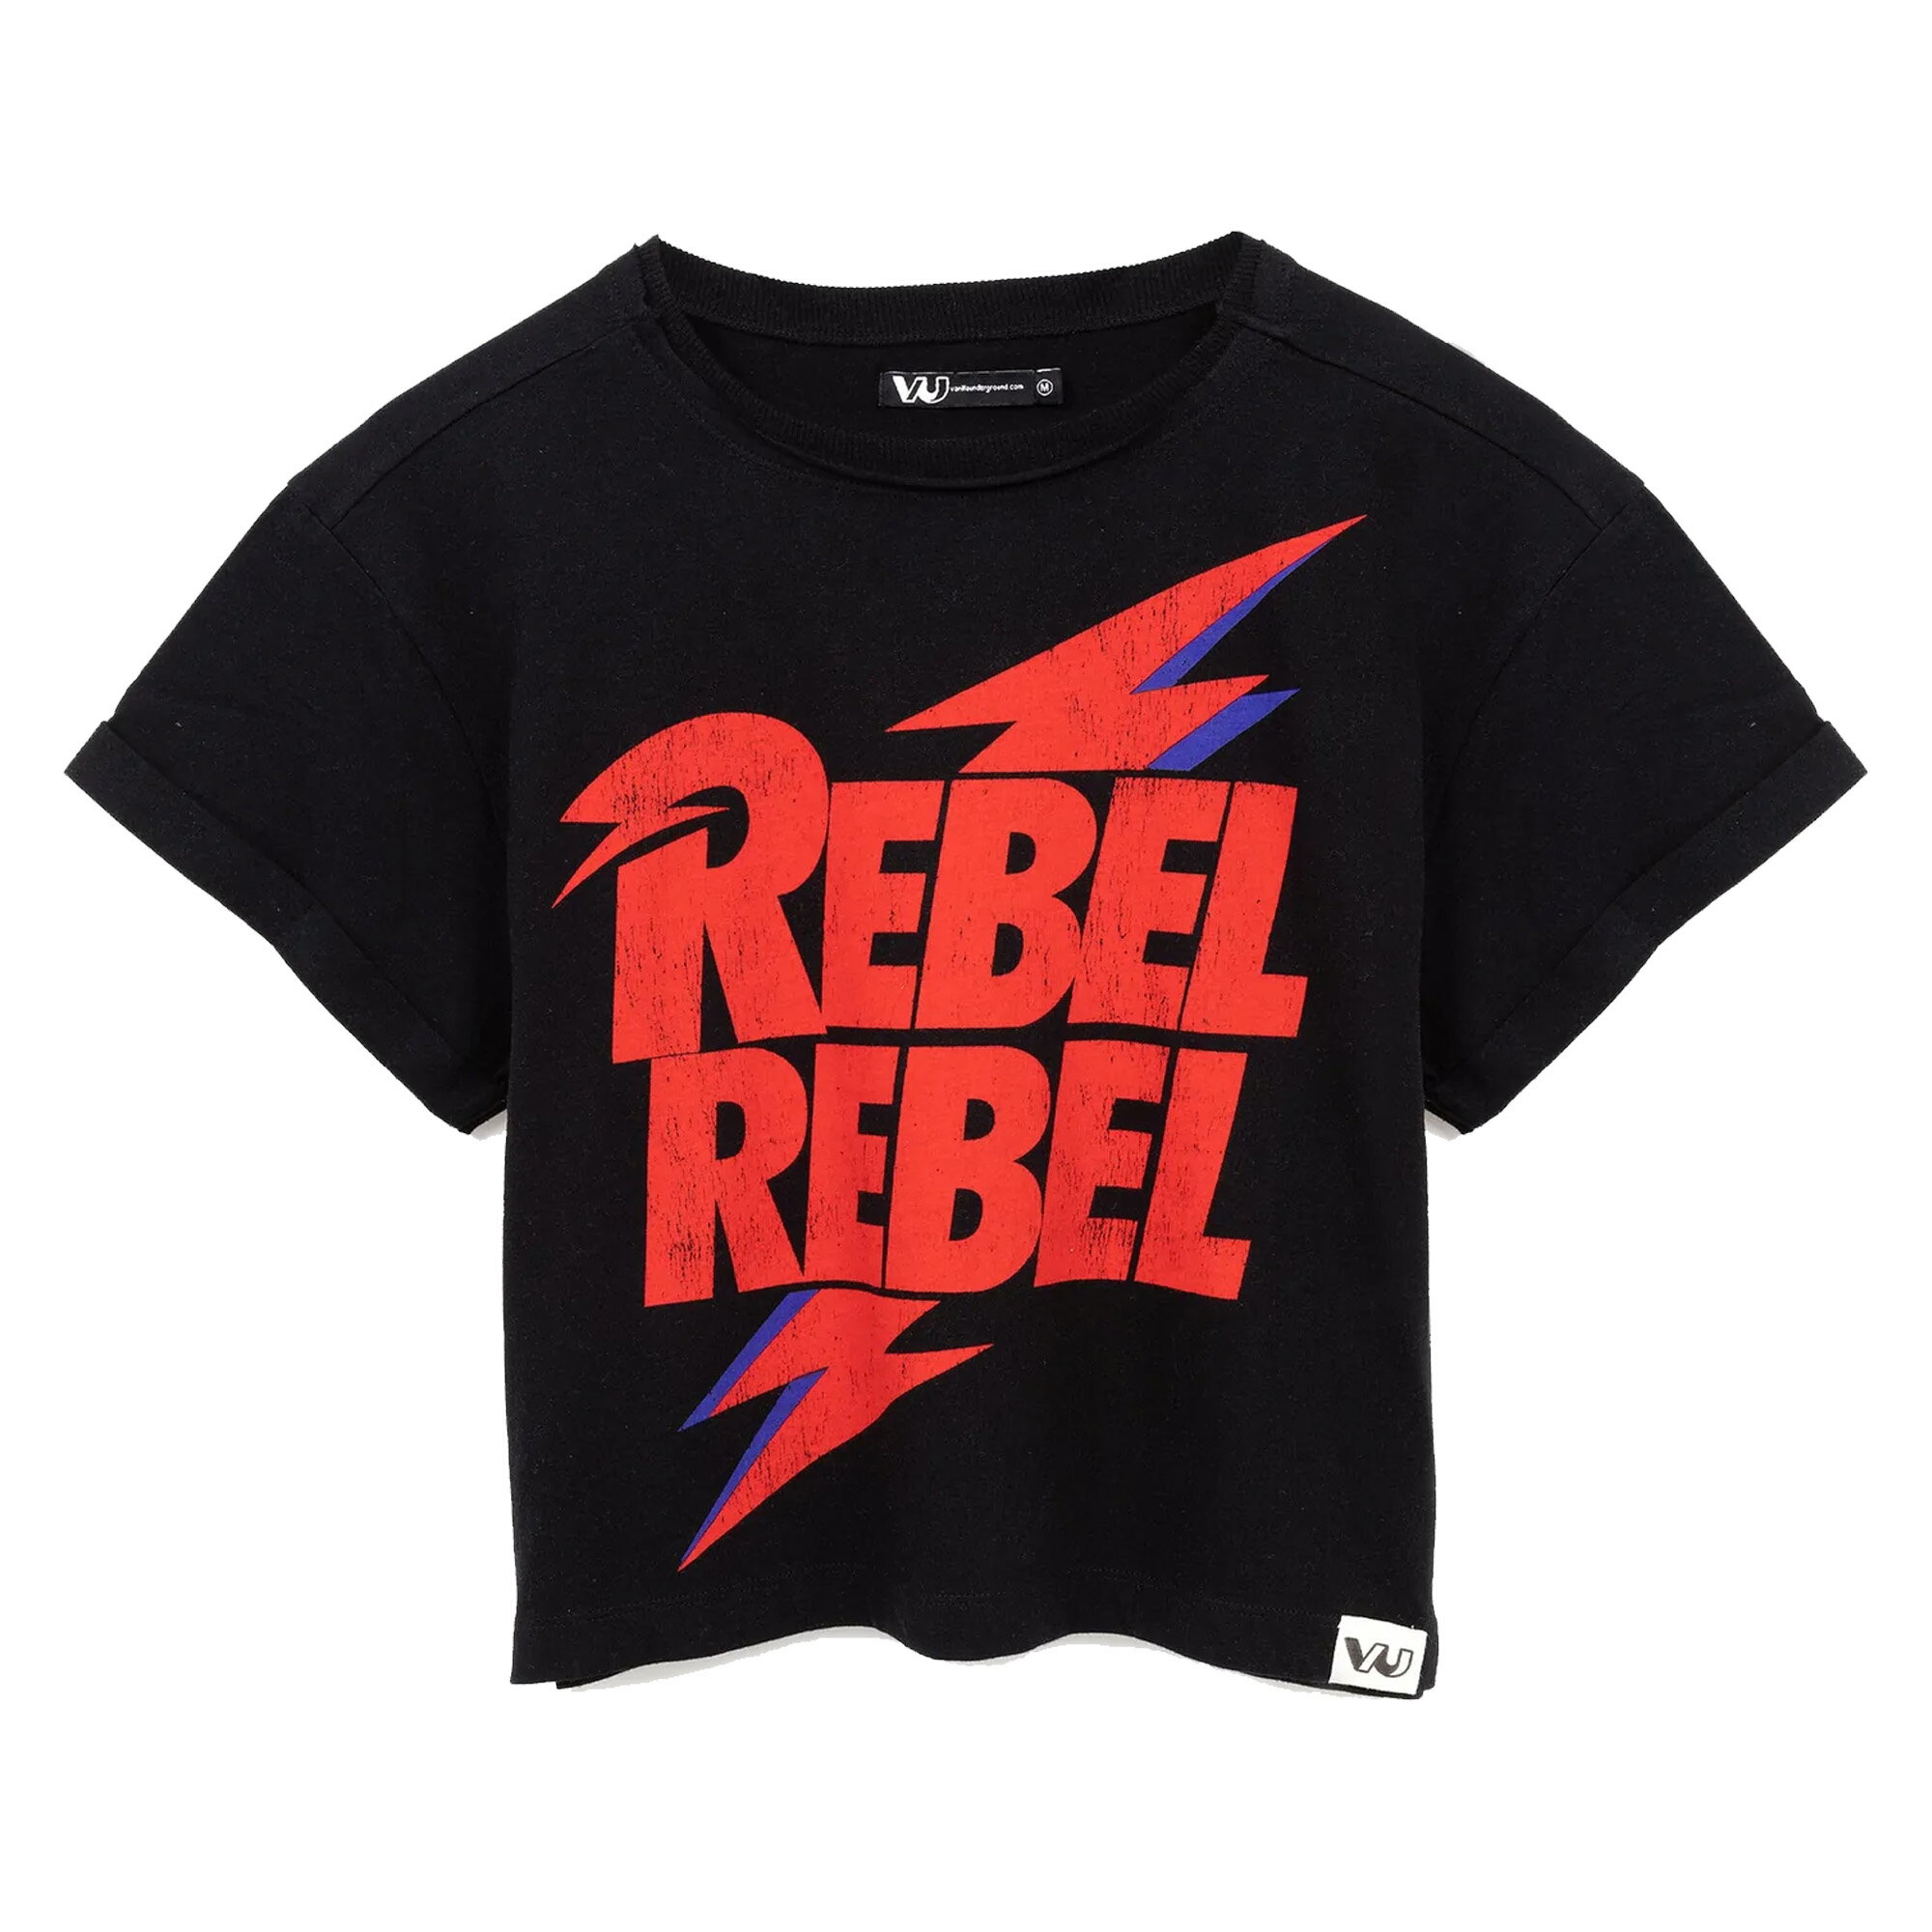 (デヴィッド・ボウイ) David Bowie オフィシャル商品 レディース Rebel Rebel Tシャツ クロップ 半袖 トップス 【海外通販】